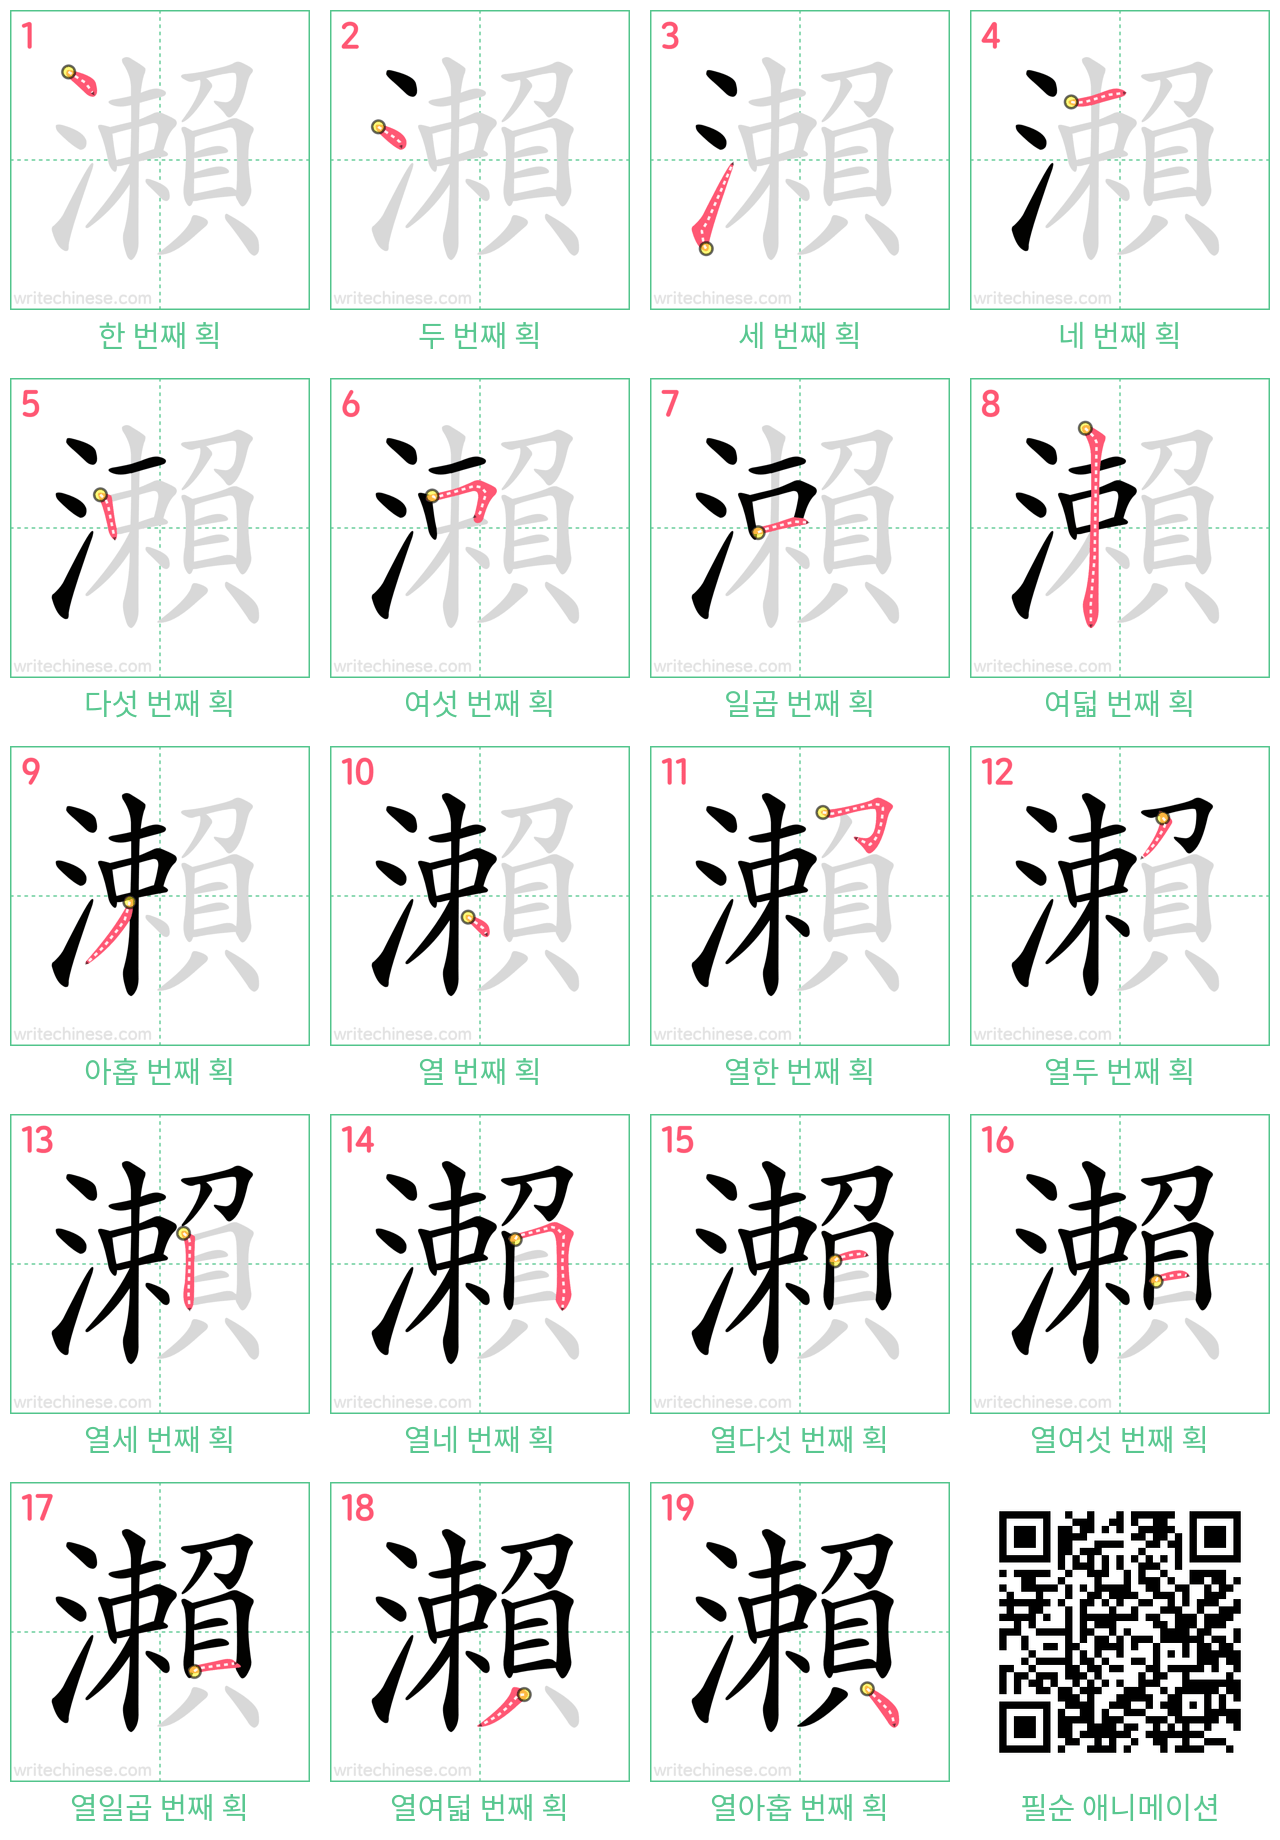 瀨 step-by-step stroke order diagrams